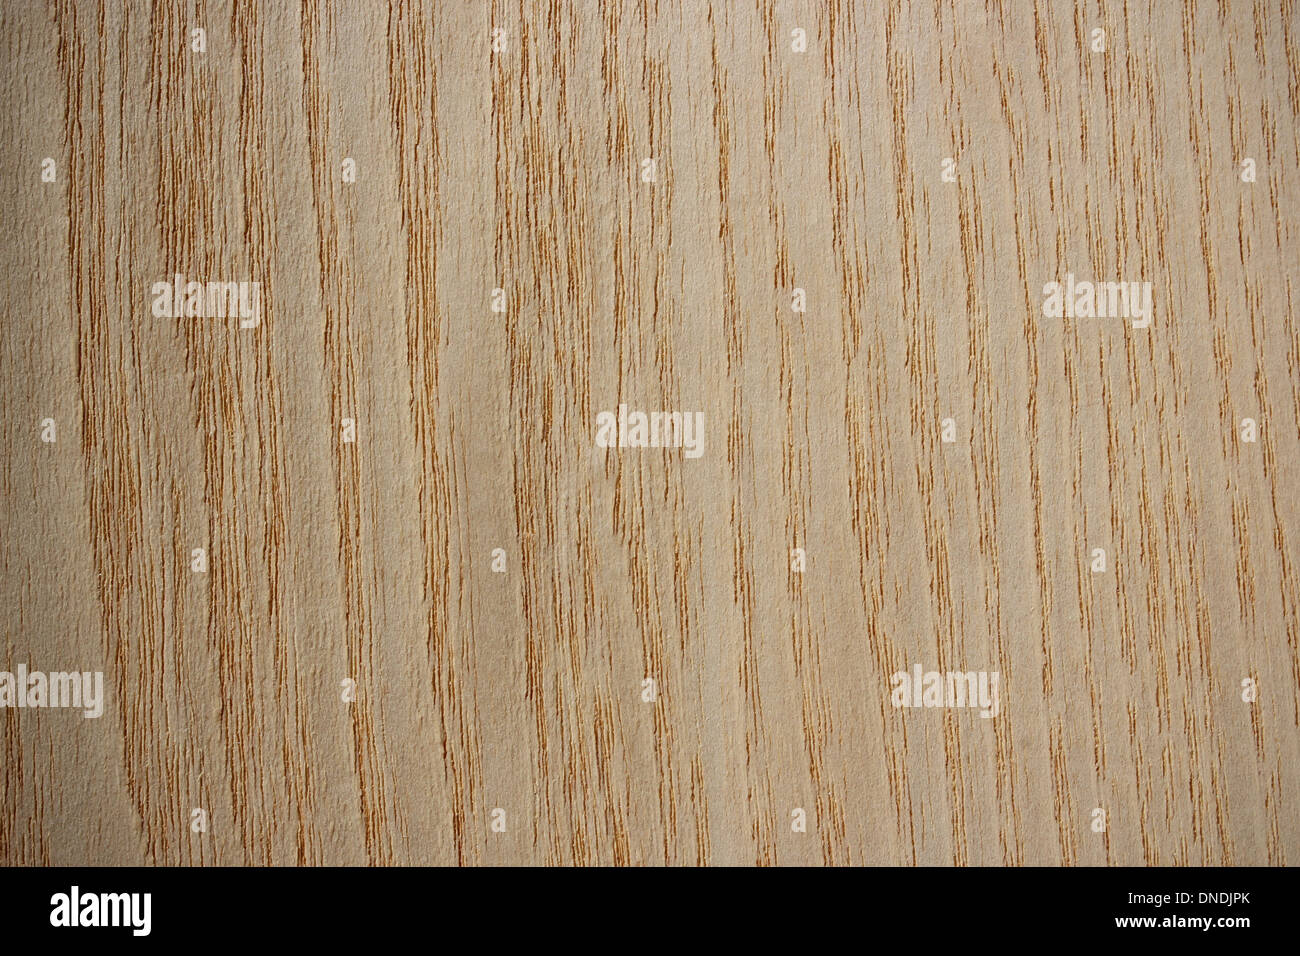 La surface de bois, le frêne (Fraxinus) - lignes verticales Banque D'Images